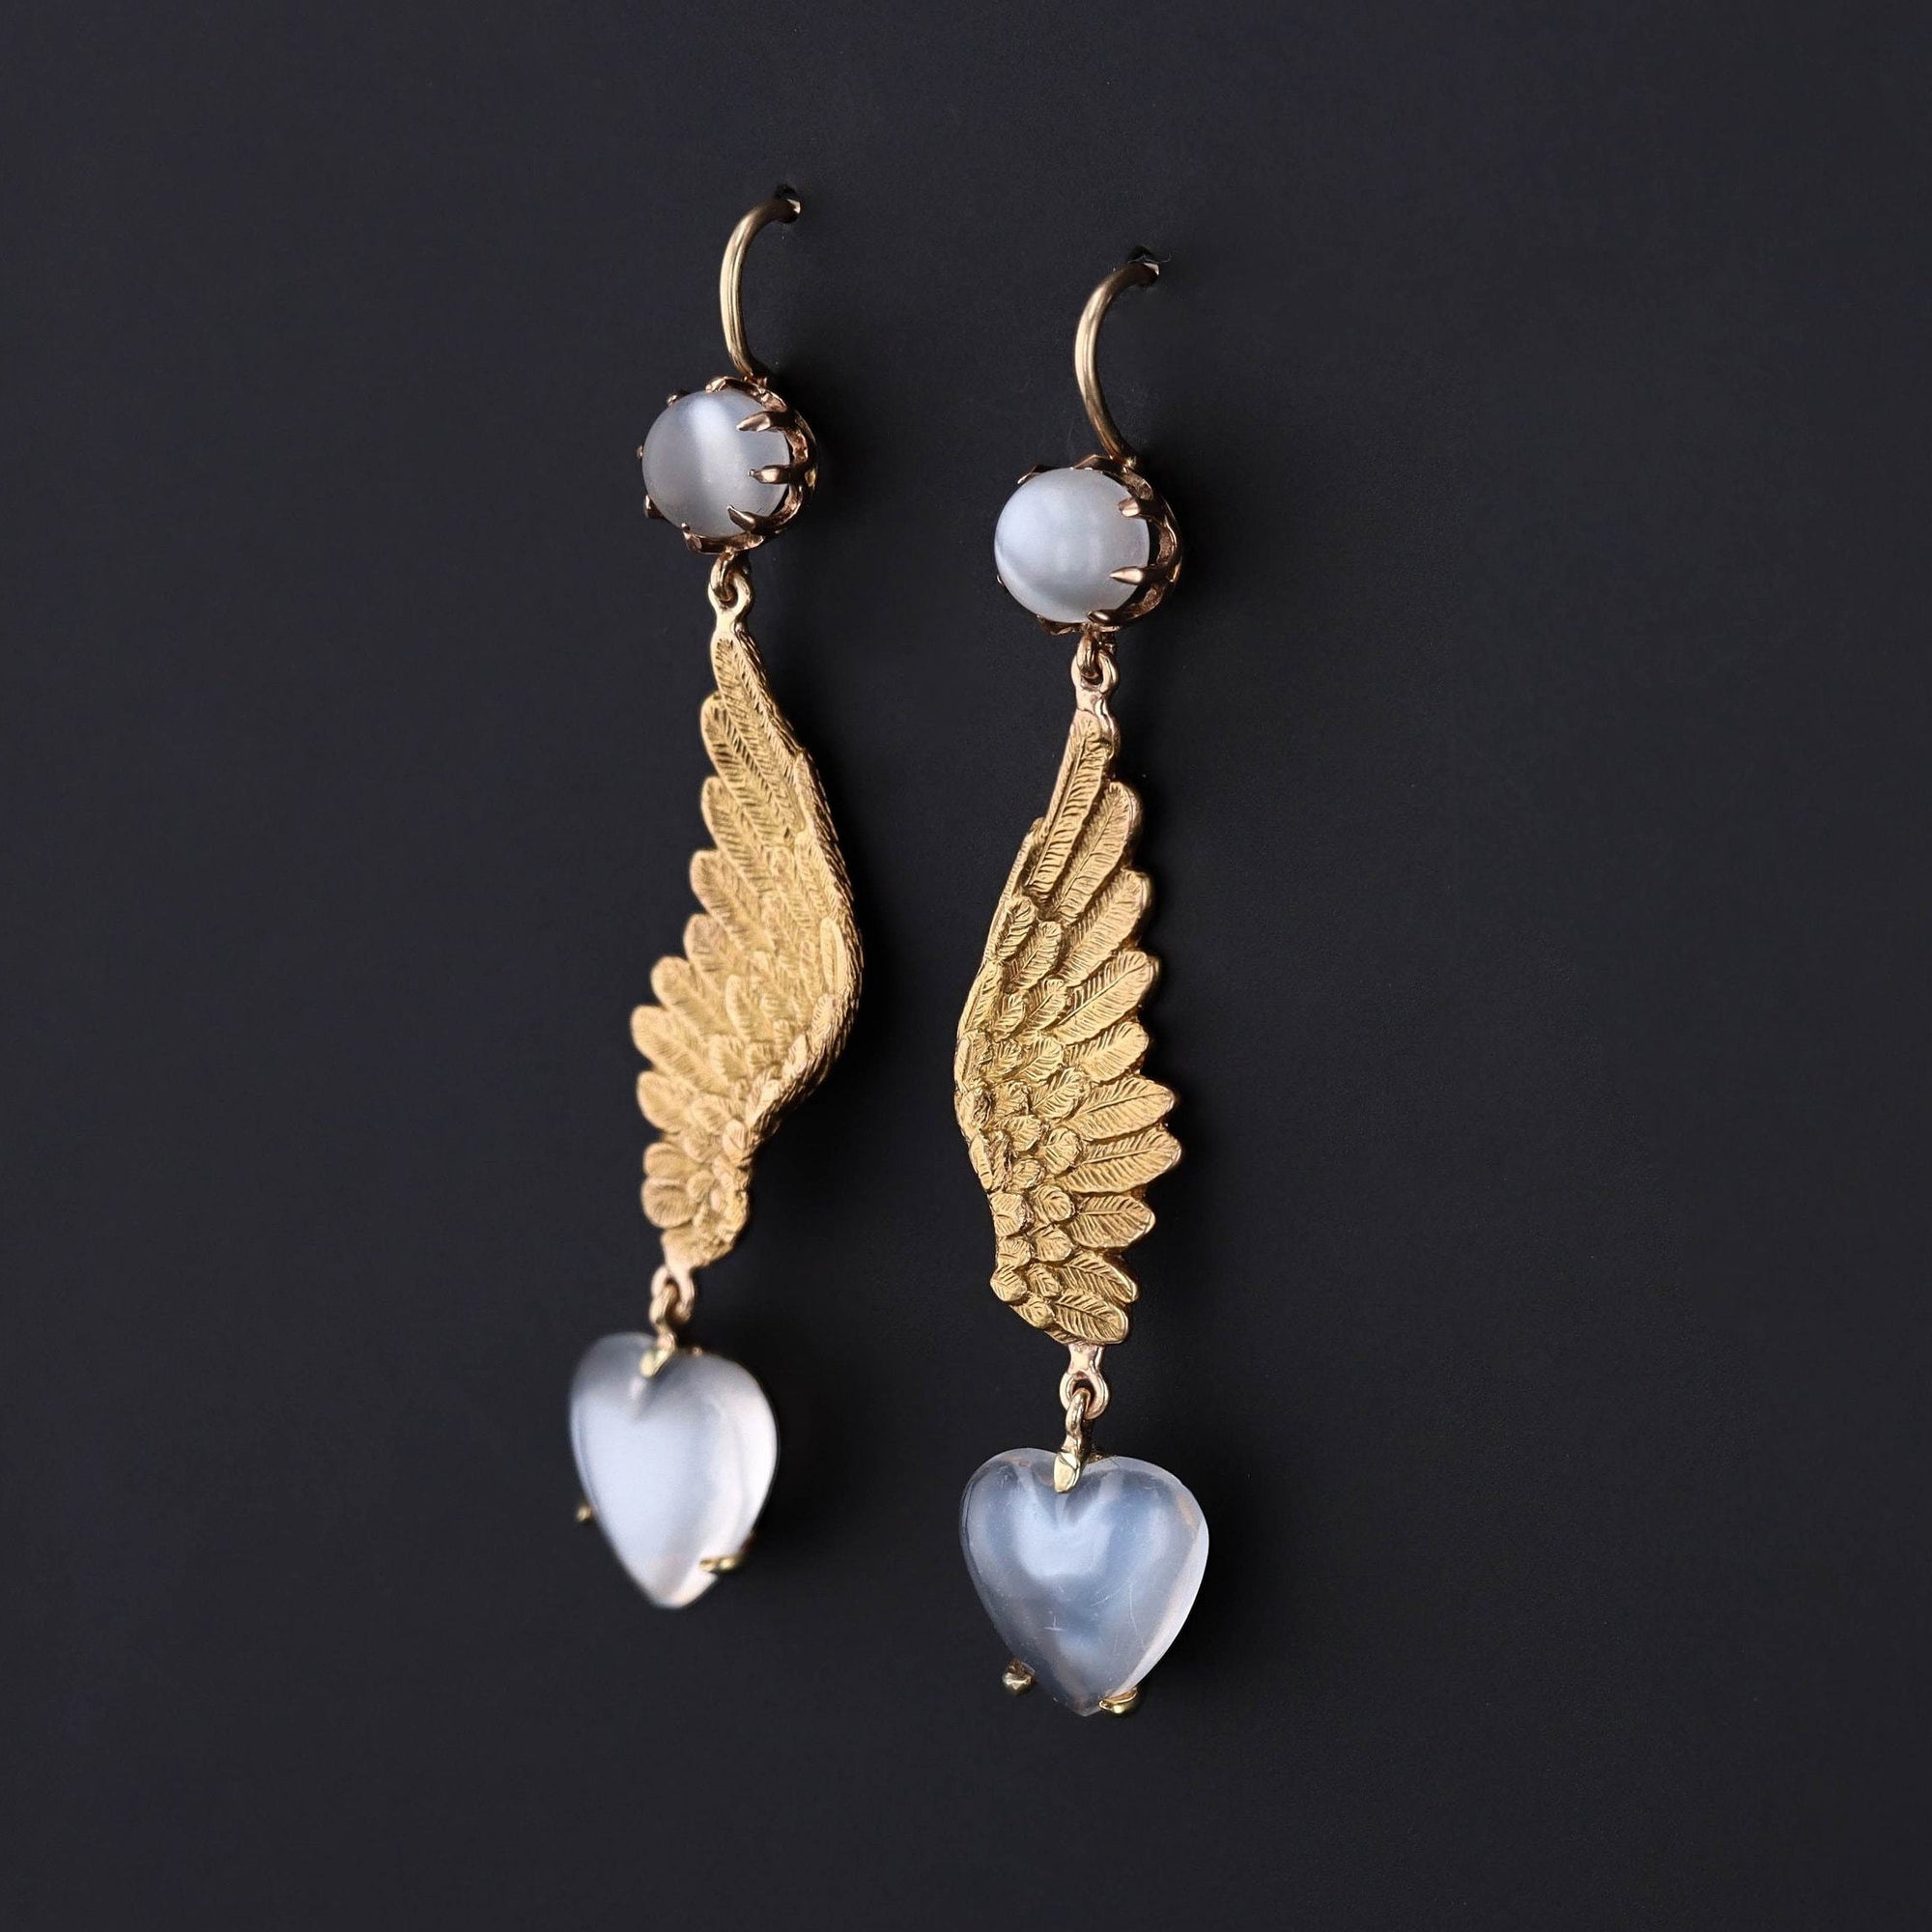 14k Gold Enamel Wing Earrings | Antique Pin Conversion Earrings 